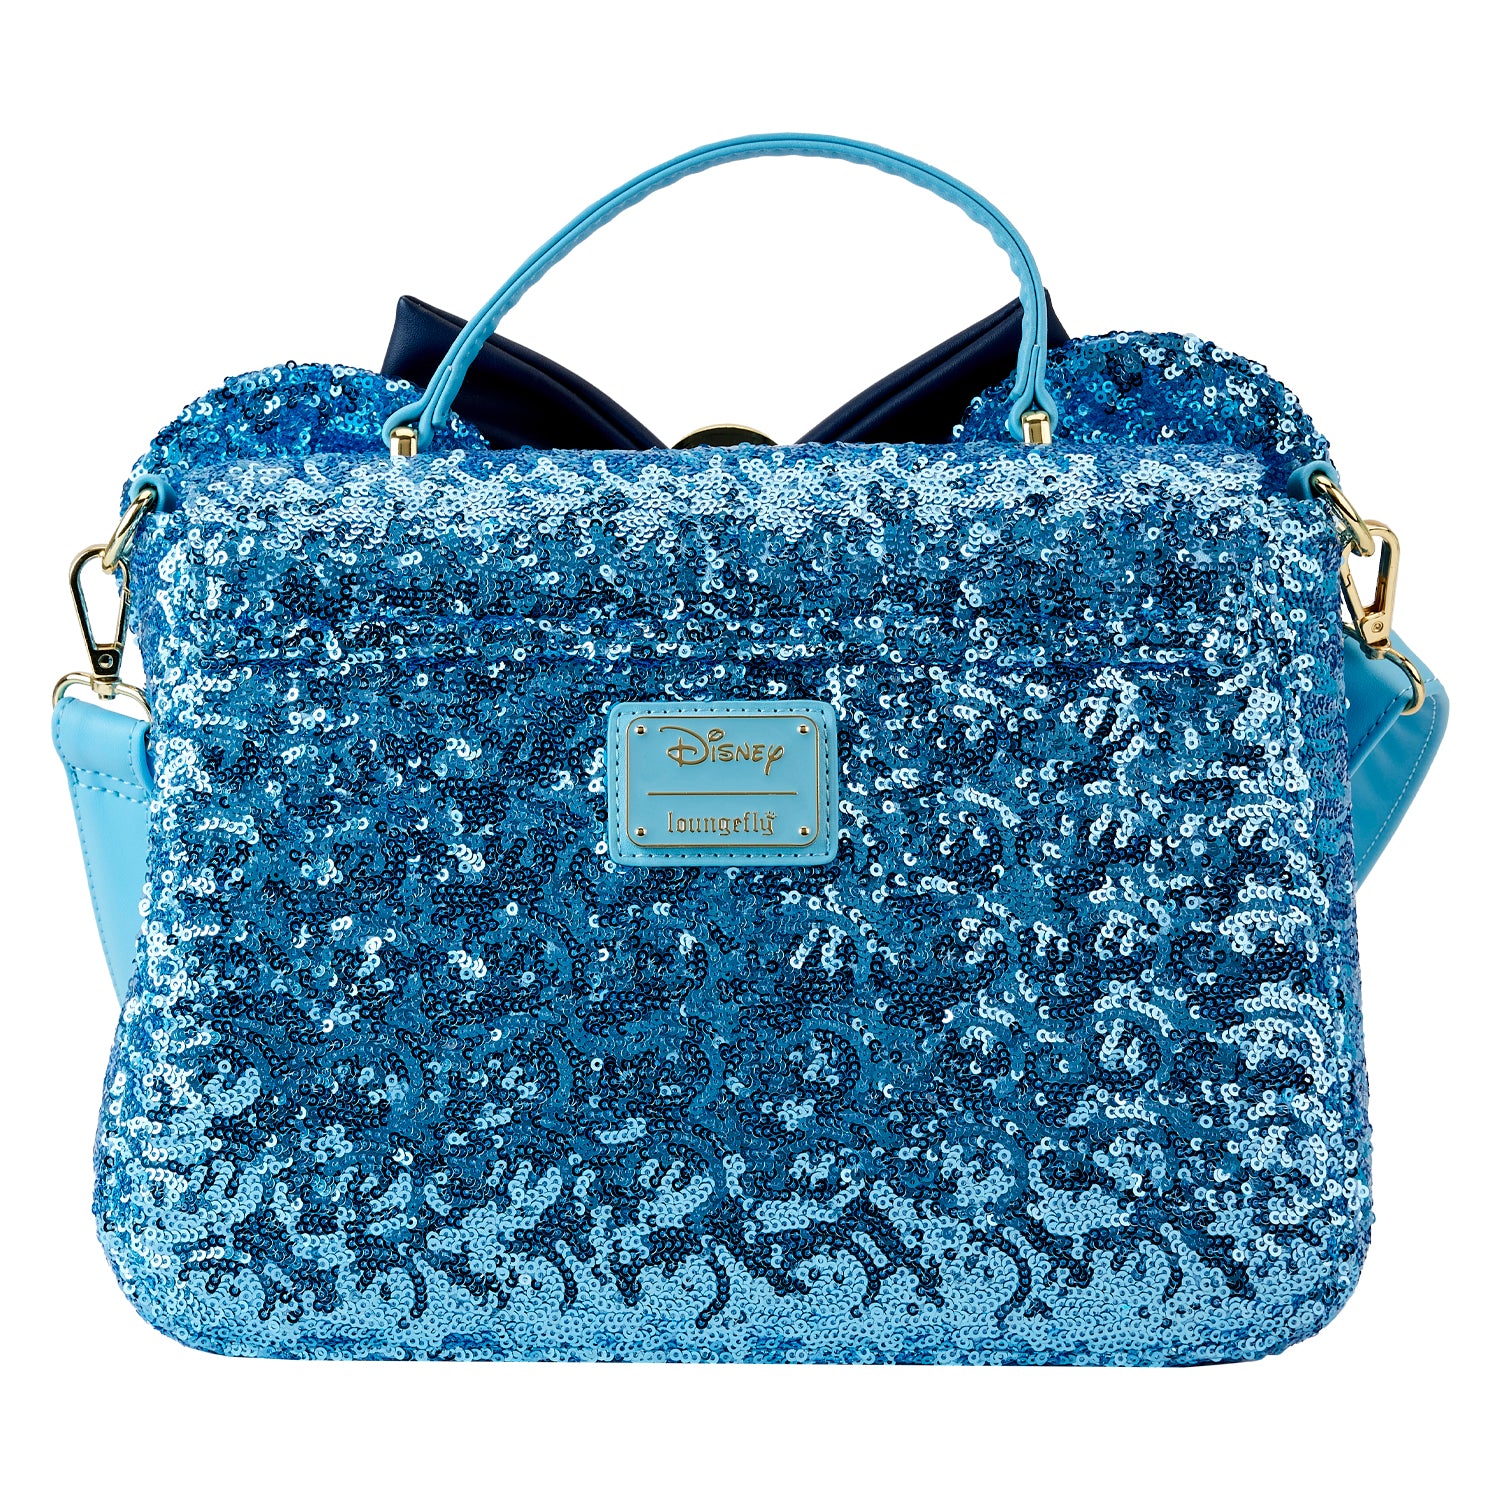 chanel handbags navy blue